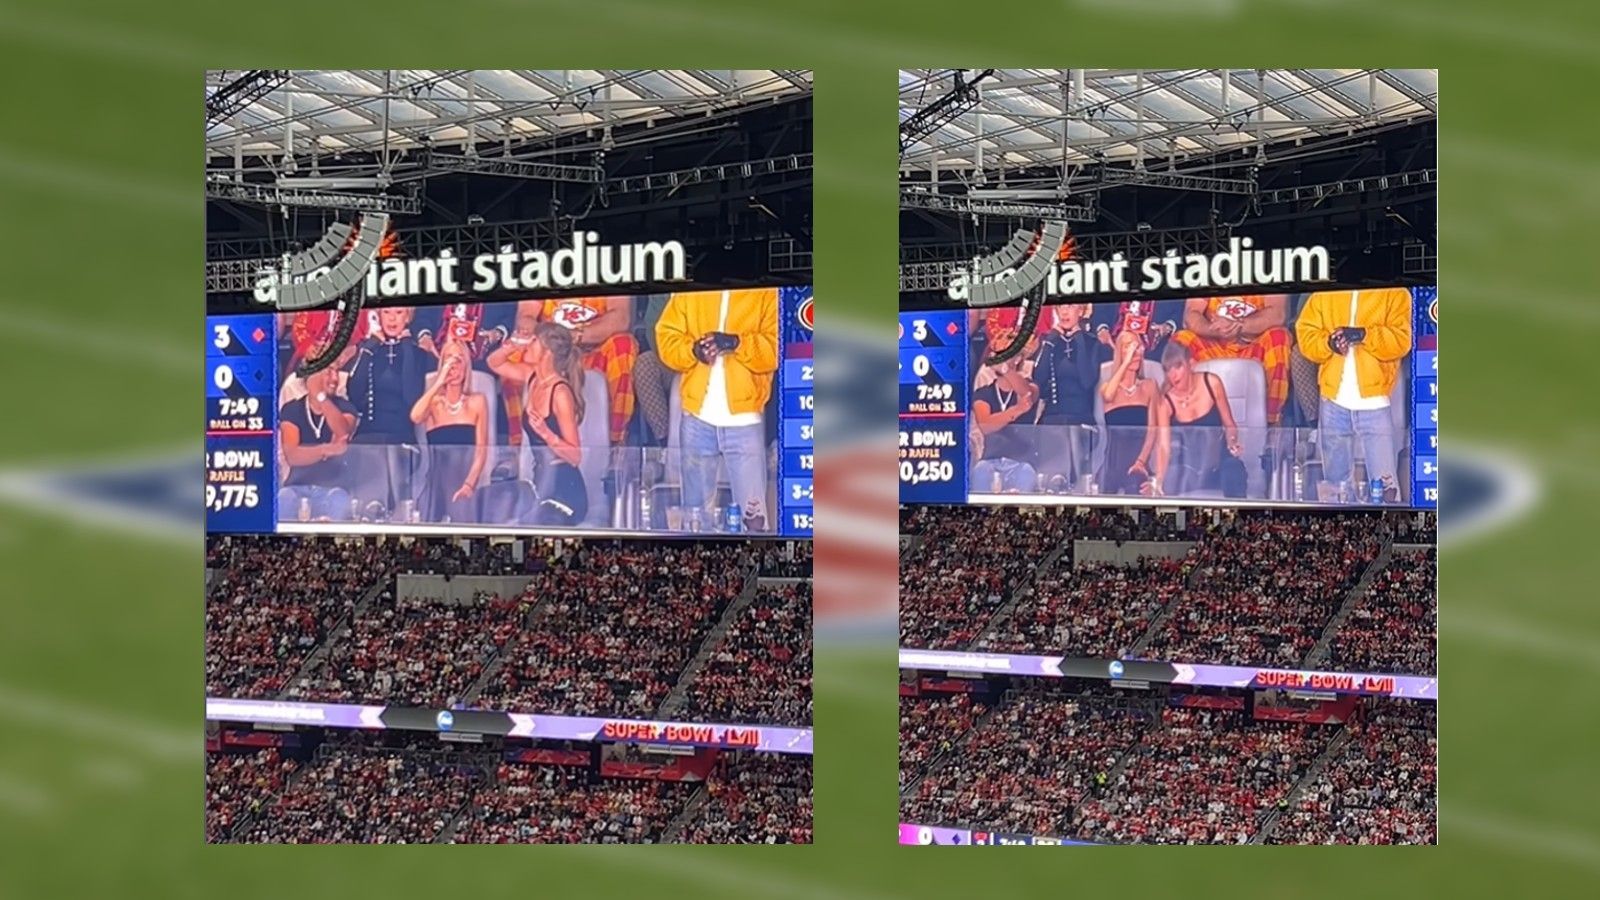 <strong>Taylor Swift ext Bier</strong><br>Abseits des Spiels sorgte die Sängerin für einen bemerkenswerten Moment. Während der ersten Halbzeit wurde Swift auf der Stadionleinwand eingeblendet und exte - unter den Jubelstürmen der Fans im Stadion - einen Becher Bier.